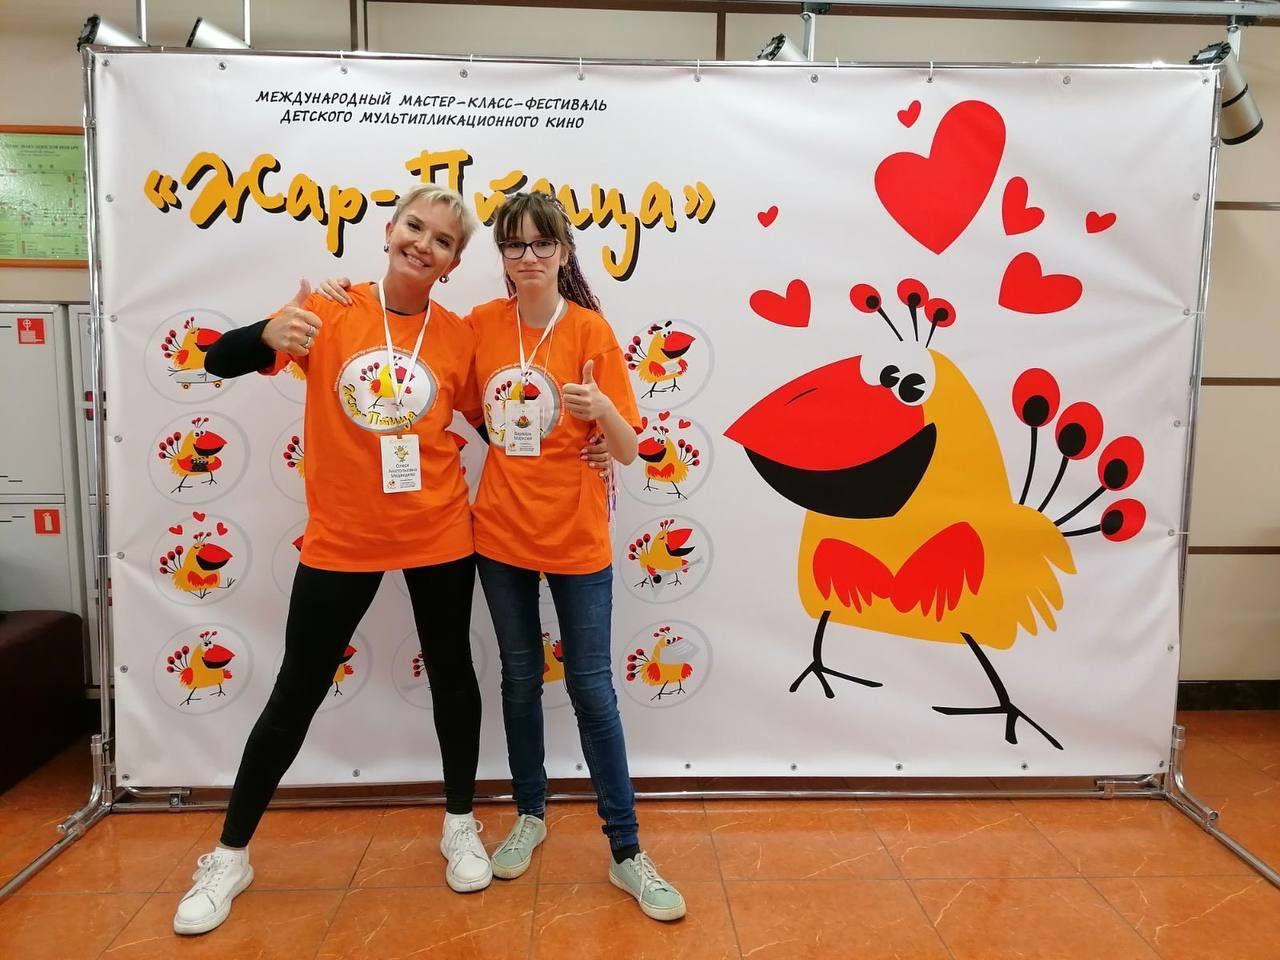 Преподаватель Медведева О.А. с ученицей на фестивале "Жар-Птица"